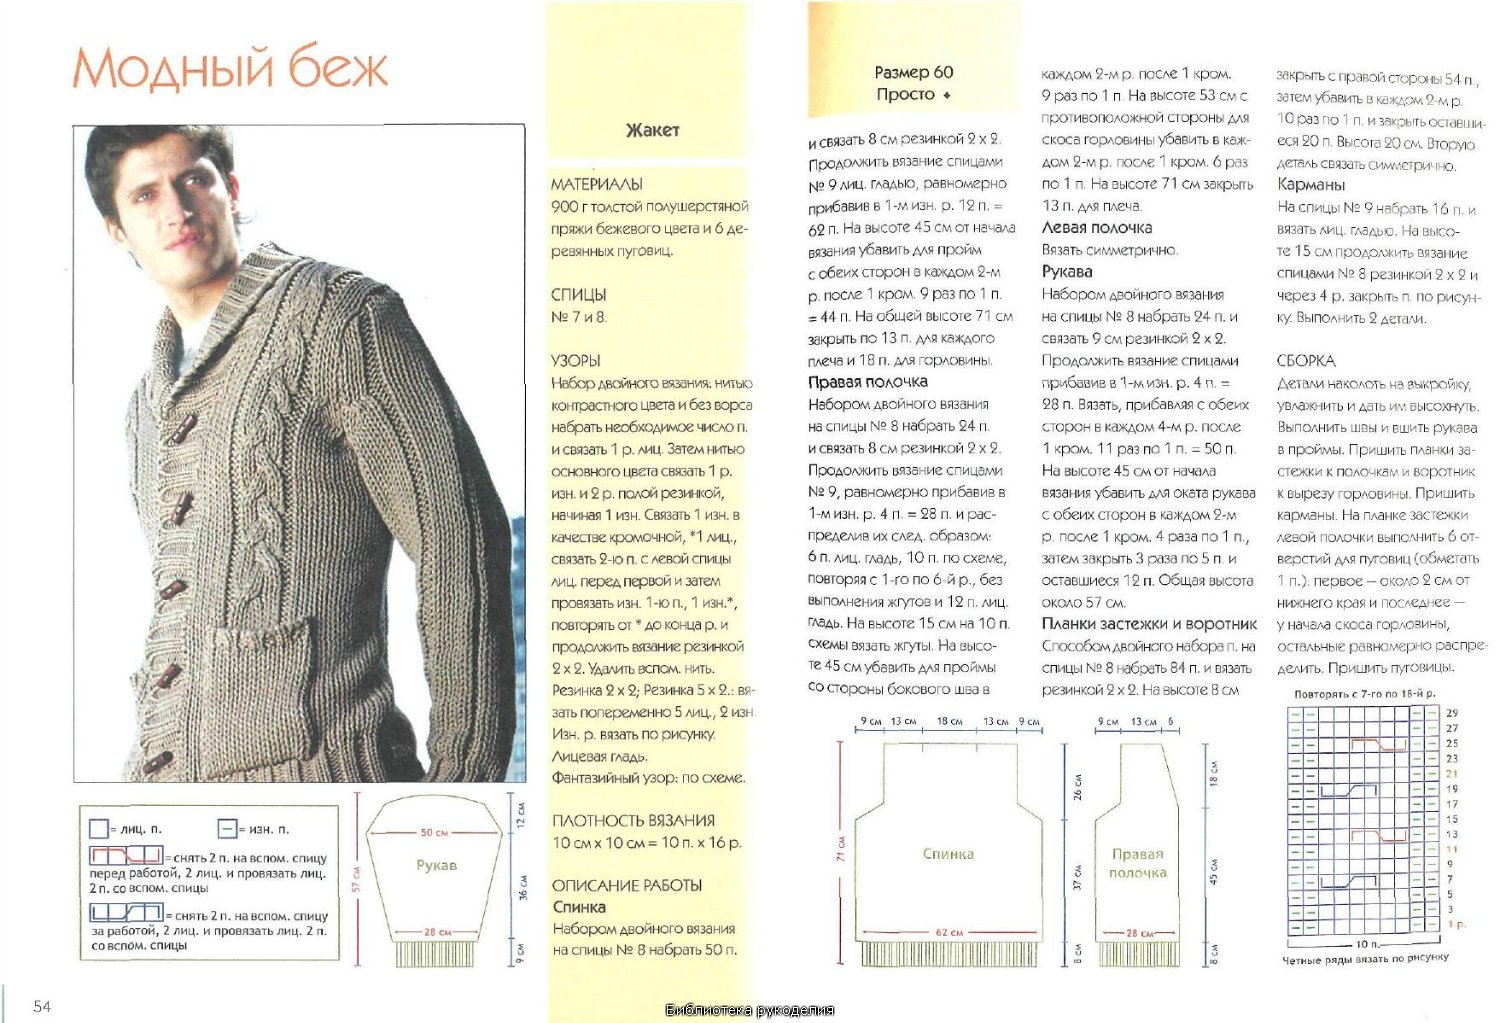 Вязание спицами для мужчин 2016: схемы модного мужского жакета и жаккарда